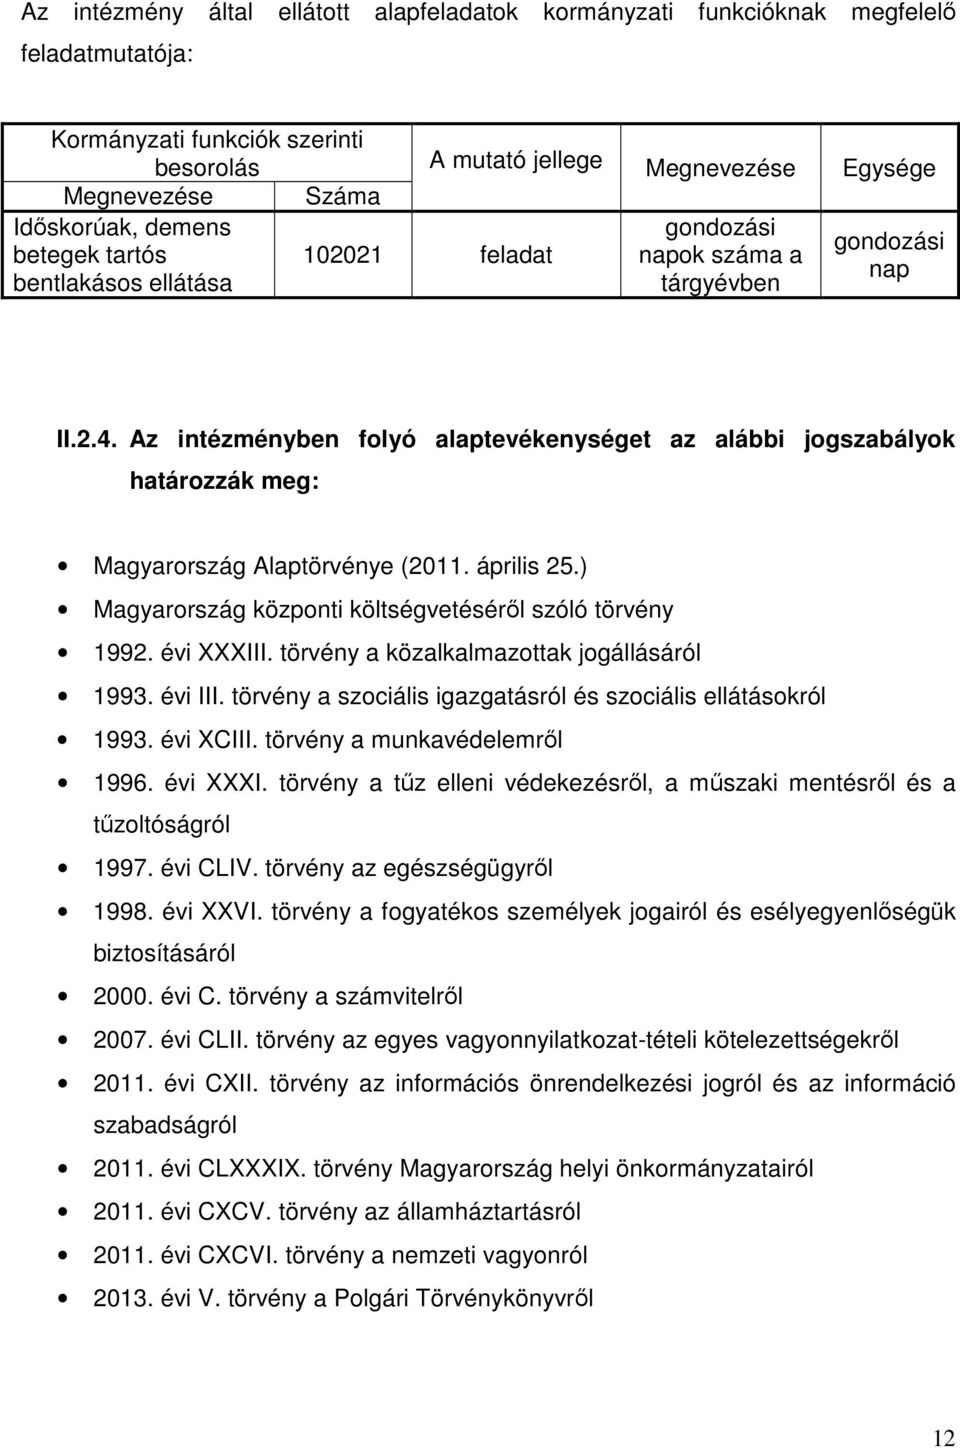 Az intézményben folyó alaptevékenységet az alábbi jogszabályok határozzák meg: Magyarország Alaptörvénye (2011. április 25.) Magyarország központi költségvetéséről szóló törvény 1992. évi XXXIII.